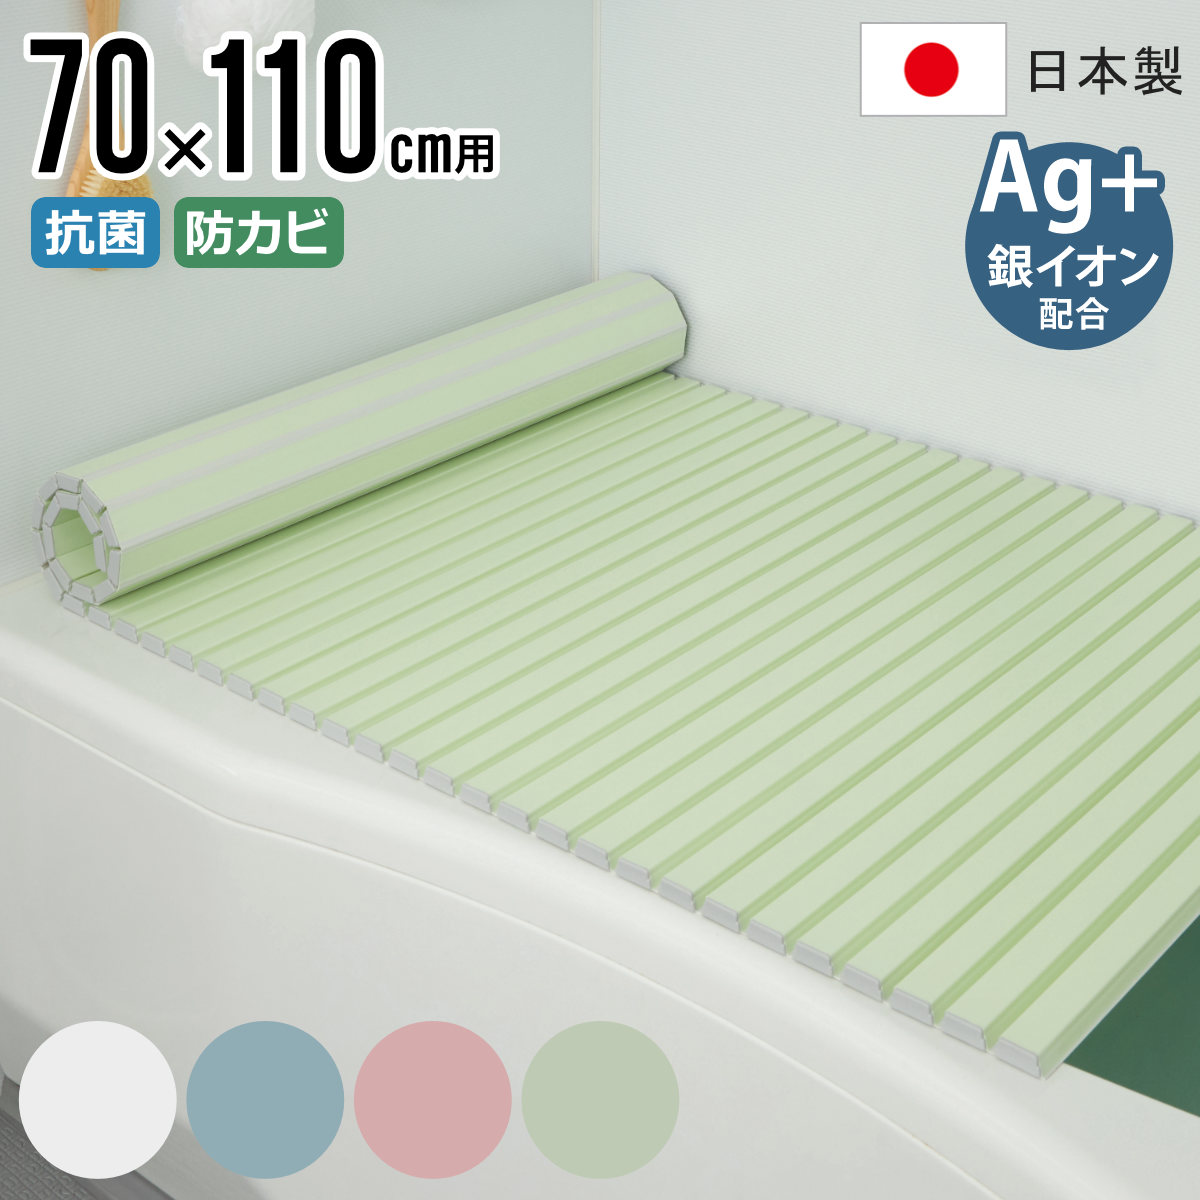 風呂ふた シャッター Ag抗菌 日本製 70×110cm 用 M-11 実寸70×112cm